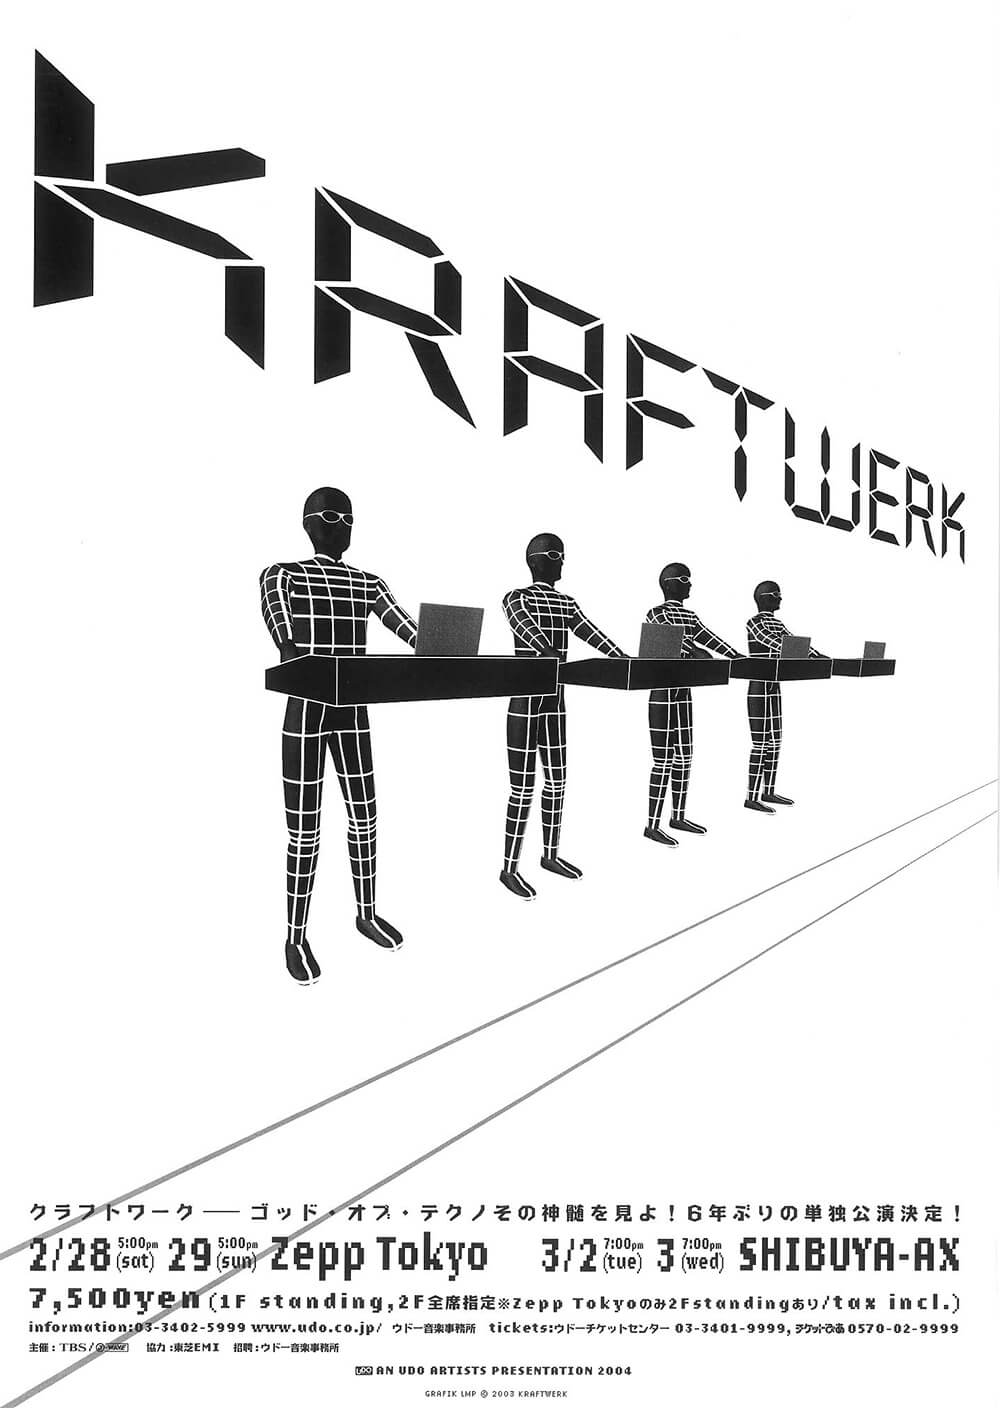 KRAFTWERK 2004来日公演 | FAJP / フライヤー・チラシのグラフィック